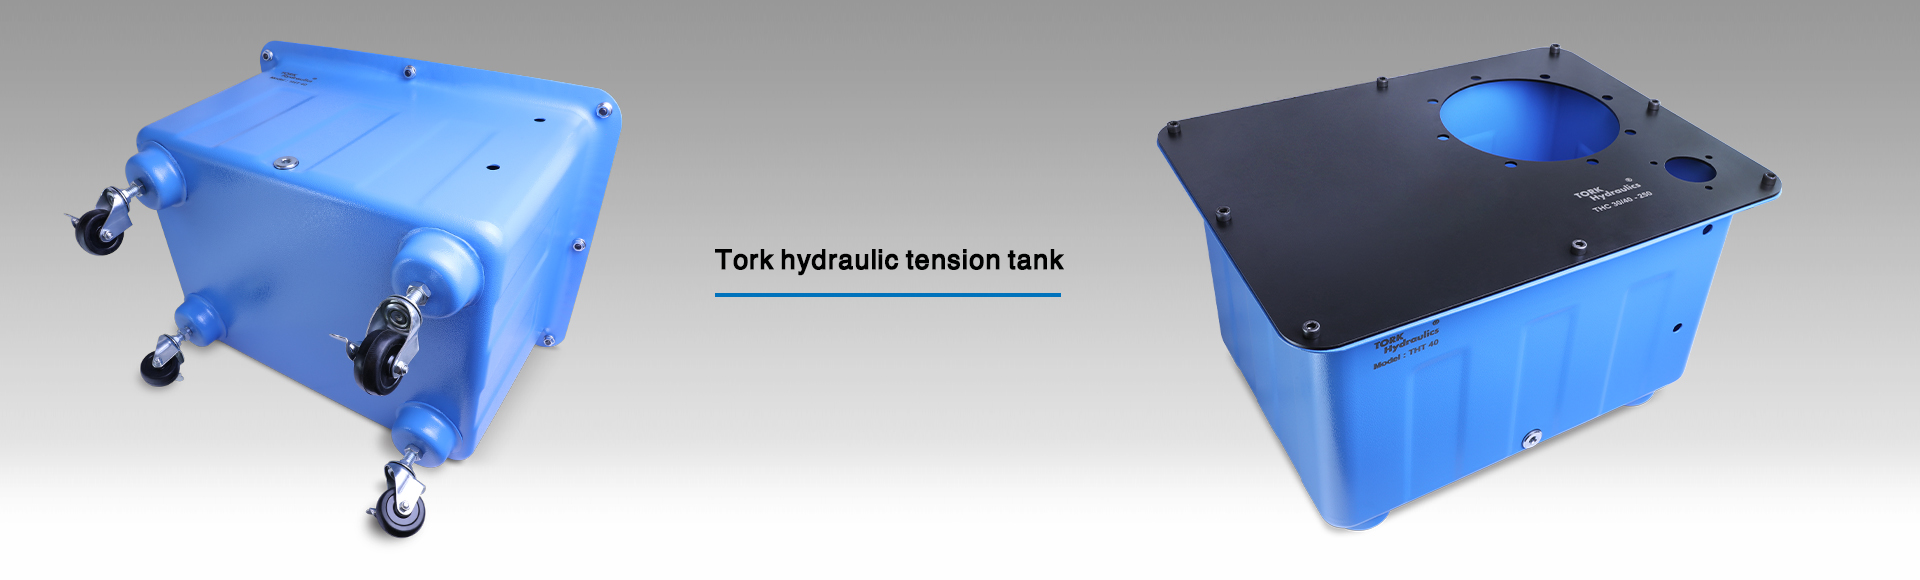 Hydraulic oil tension tank, hydraulic